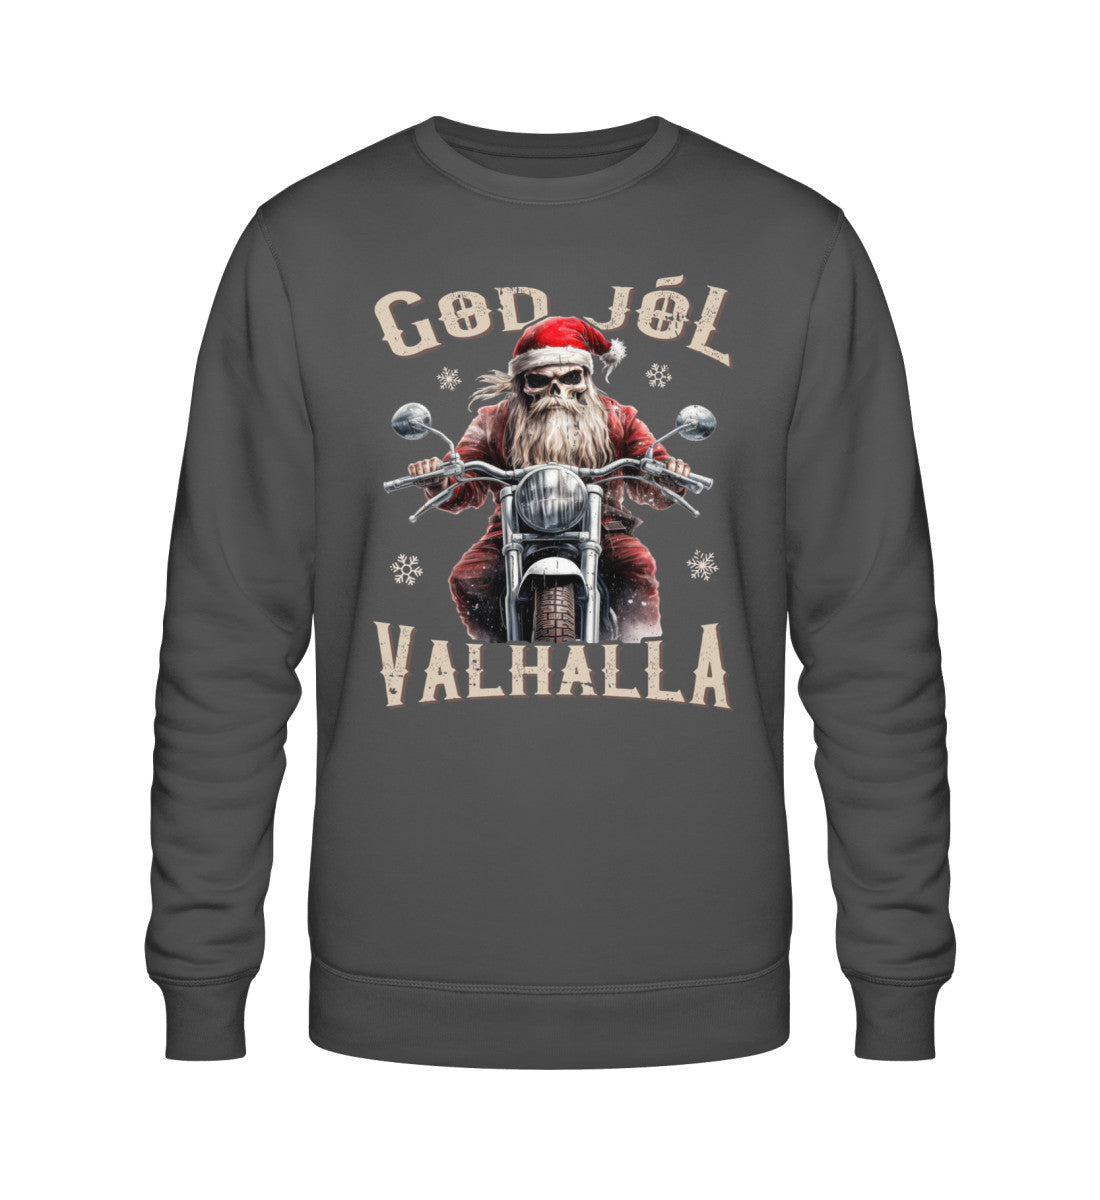 Ein Biker Sweatshirt für Motorradfahrer von Wingbikers mit dem Aufdruck, God Jól Valhalla - Wikinger auf dem Motorrad mit Weihnachtsmütze - in dunkelgrau.